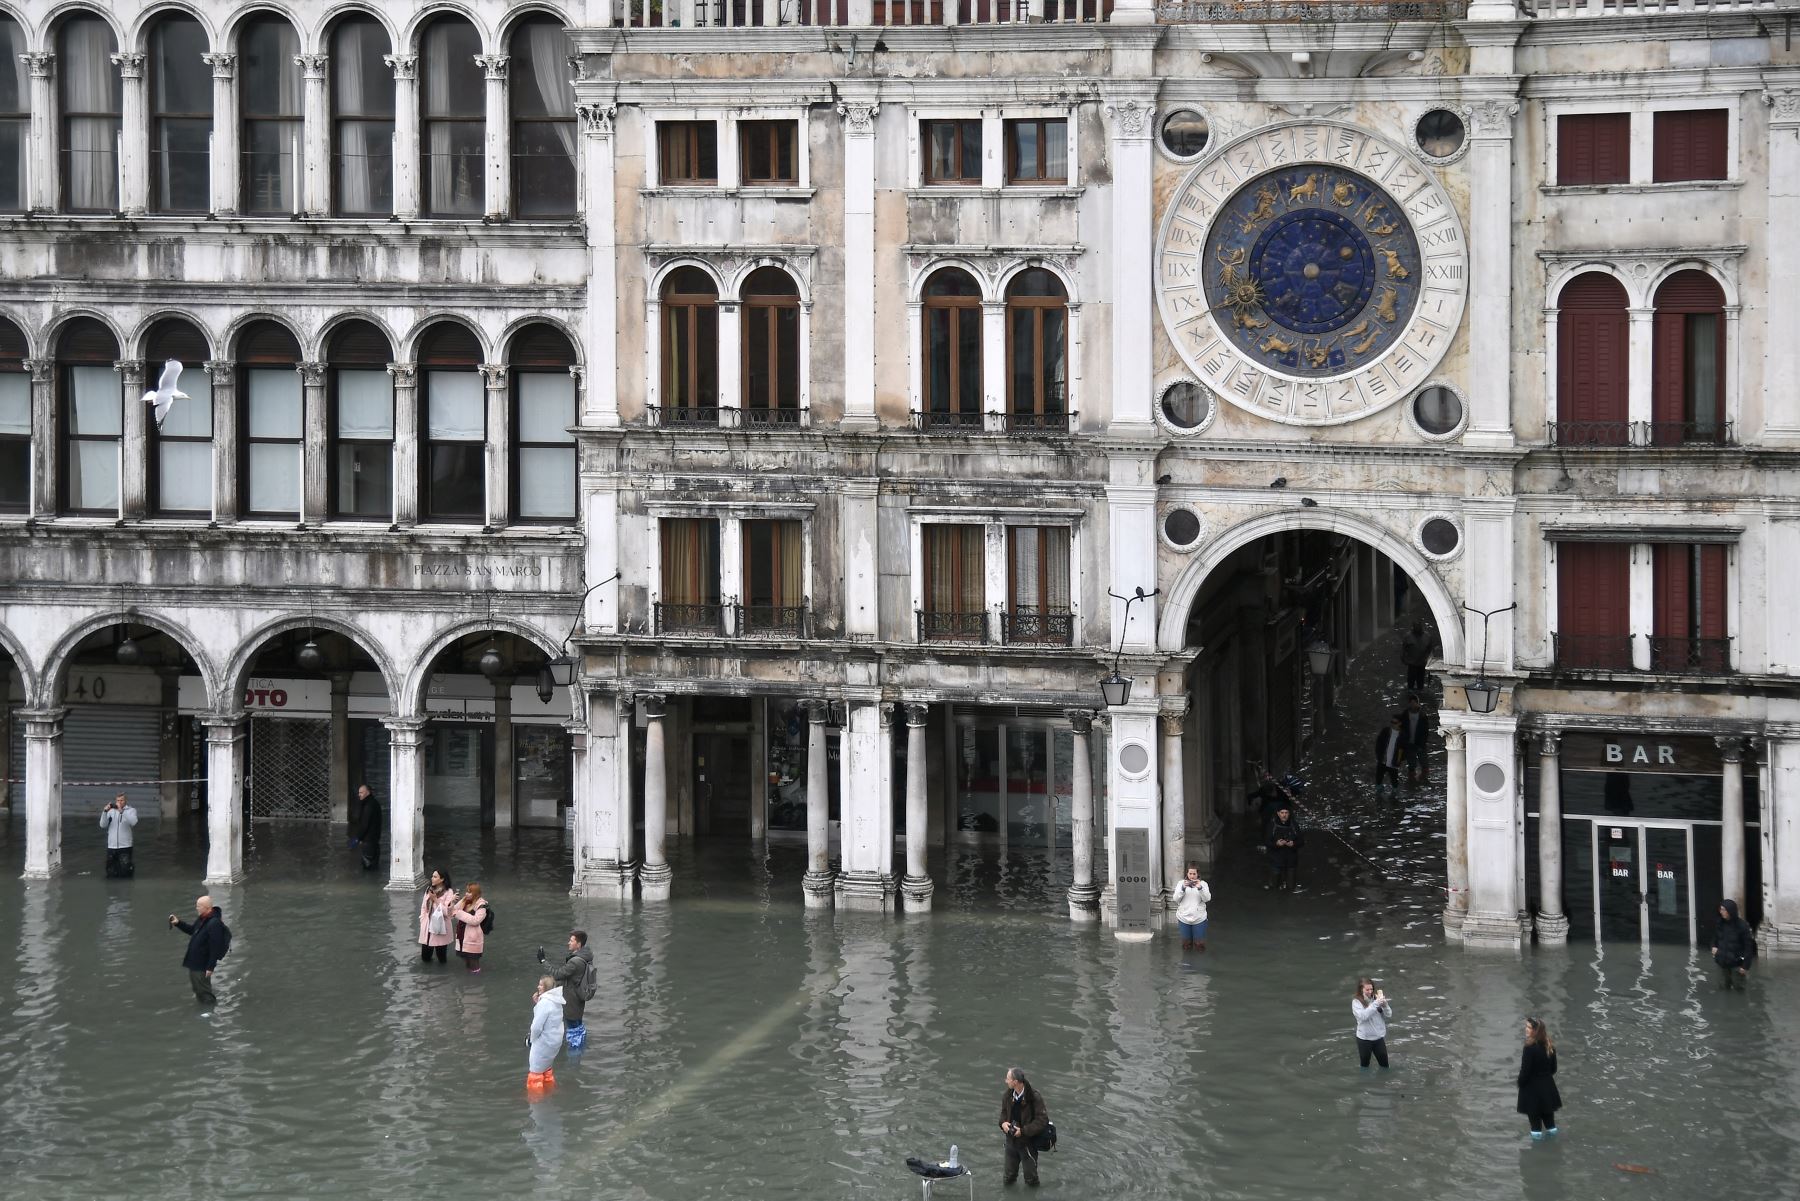 La gente camina y toma fotos en la inundada Plaza de San Marcos después de un excepcional nivel de agua durante la marea alta  en Venecia.
Foto: AFP